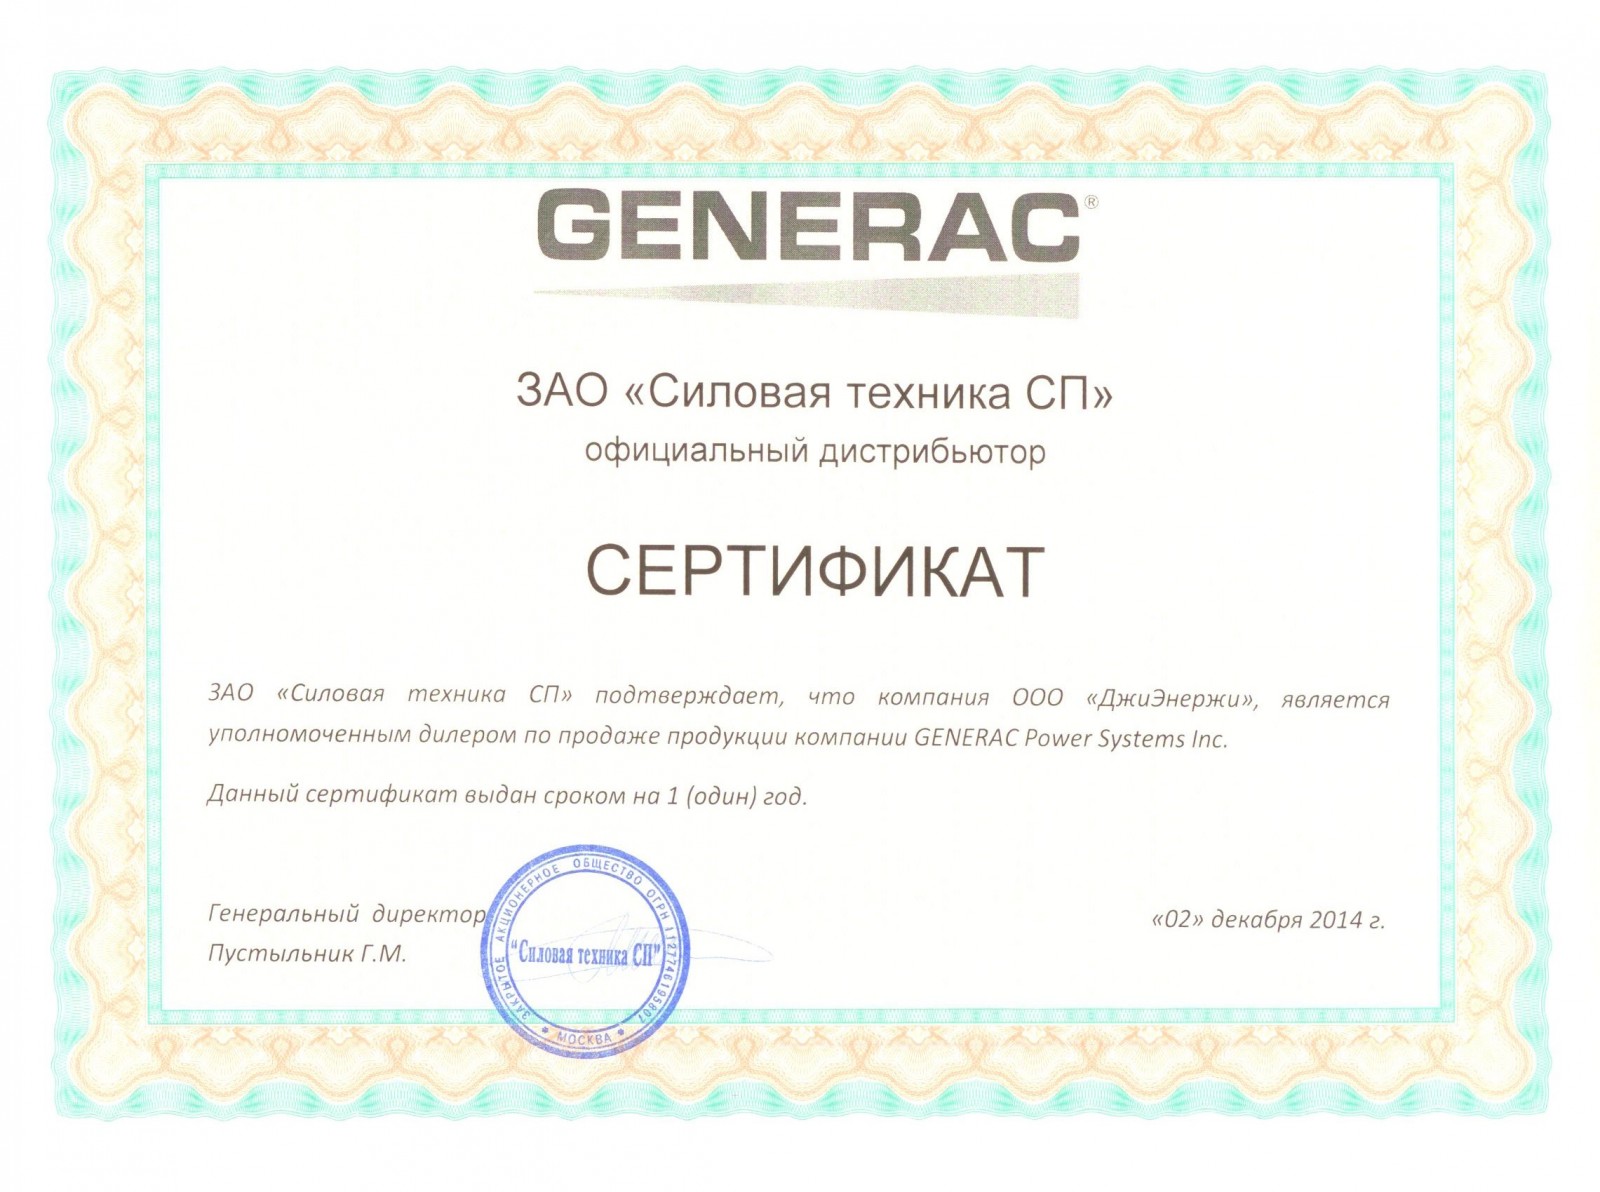 Generac certificate